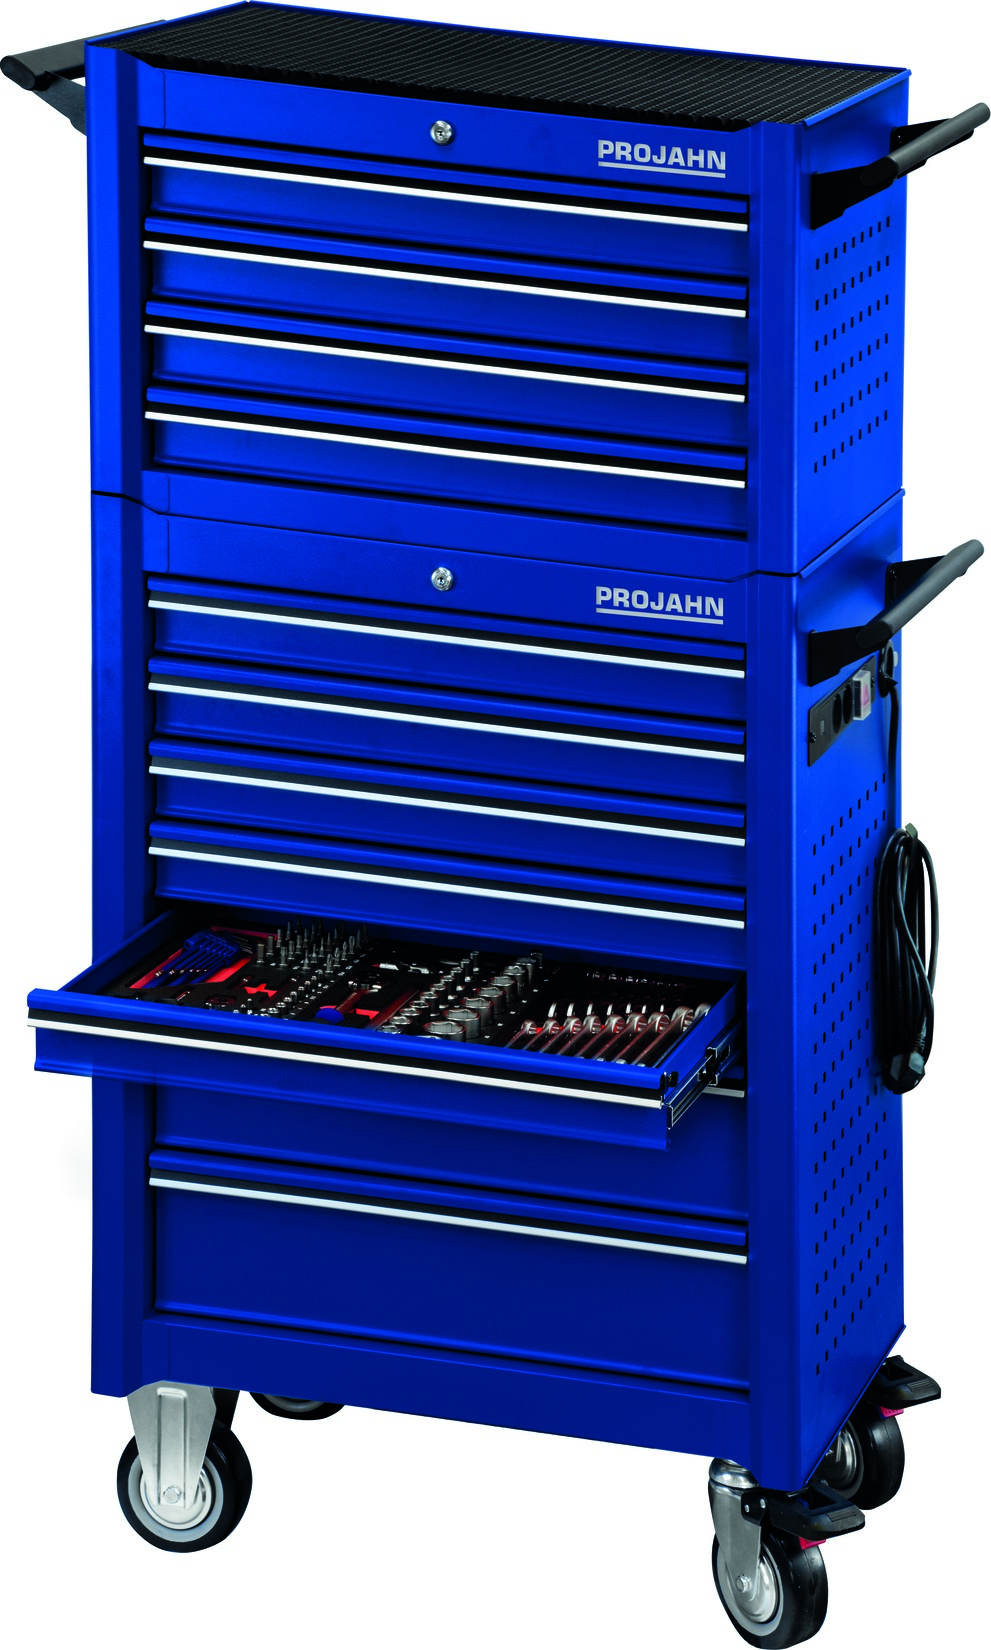 Projahn Bestückter Werkstattwagen UNIVERSE + E-Power Elektroverteiler + Werkstattwagenaufsatz UNIVERSE + Dosenhalter + Papierrollenhalter + 379-tlg. Blau 